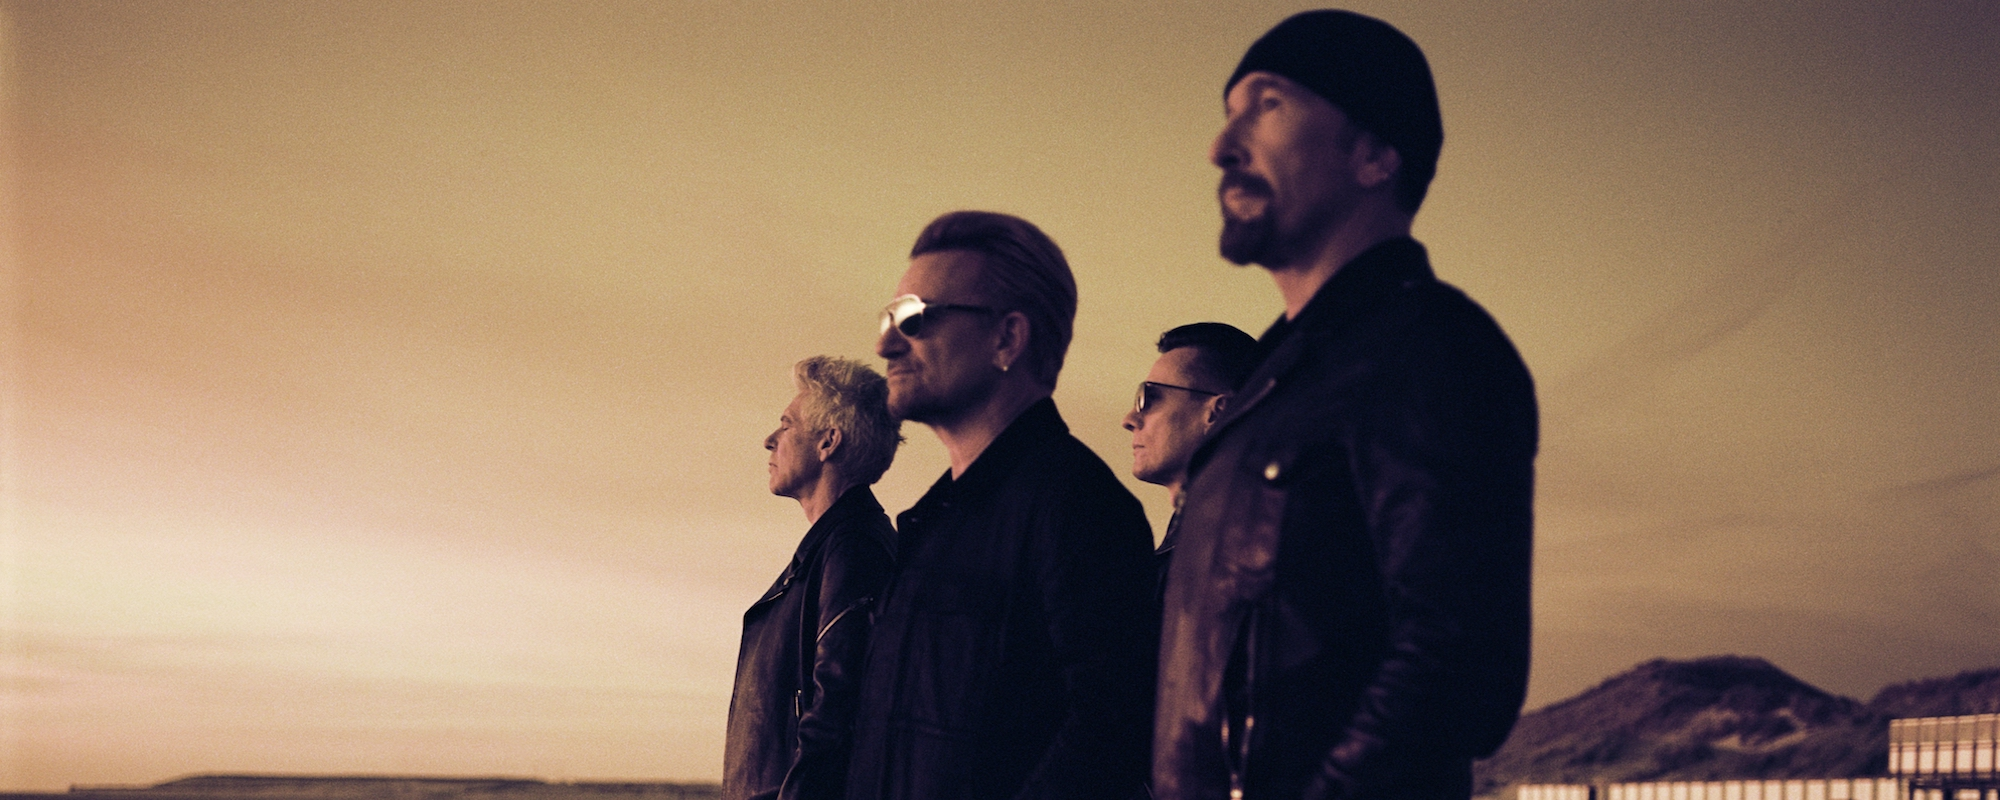 Behind the Band Name: U2